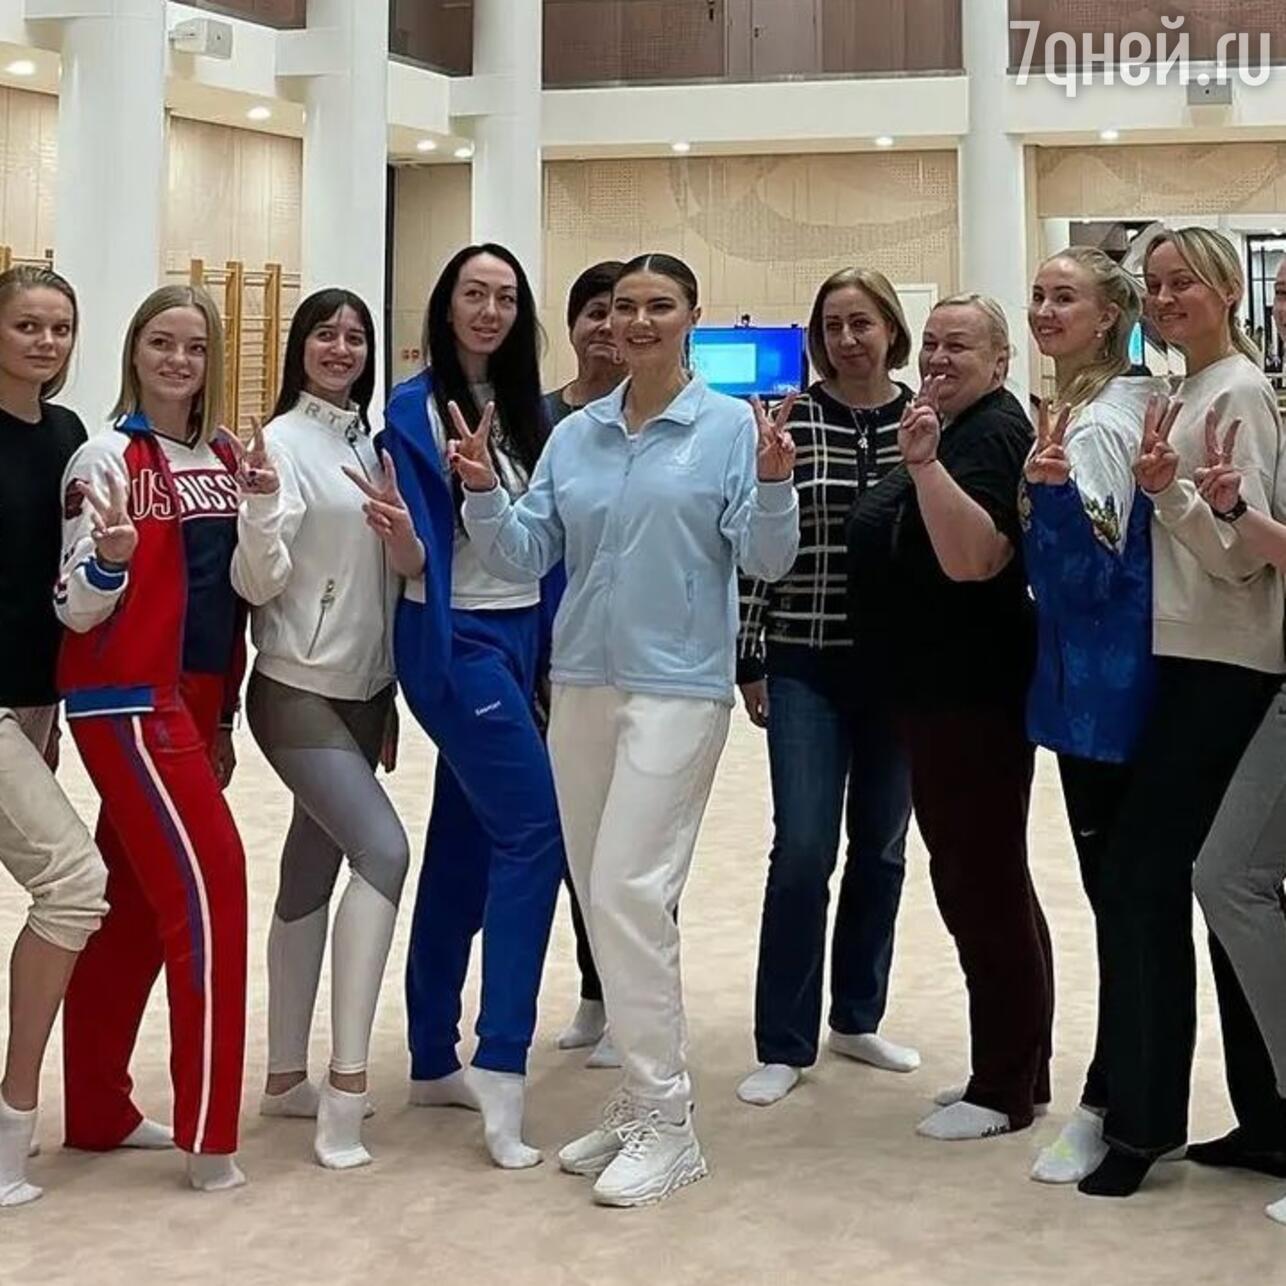 Интернет-пользователи раскритиковали наряд Алины Кабаевой